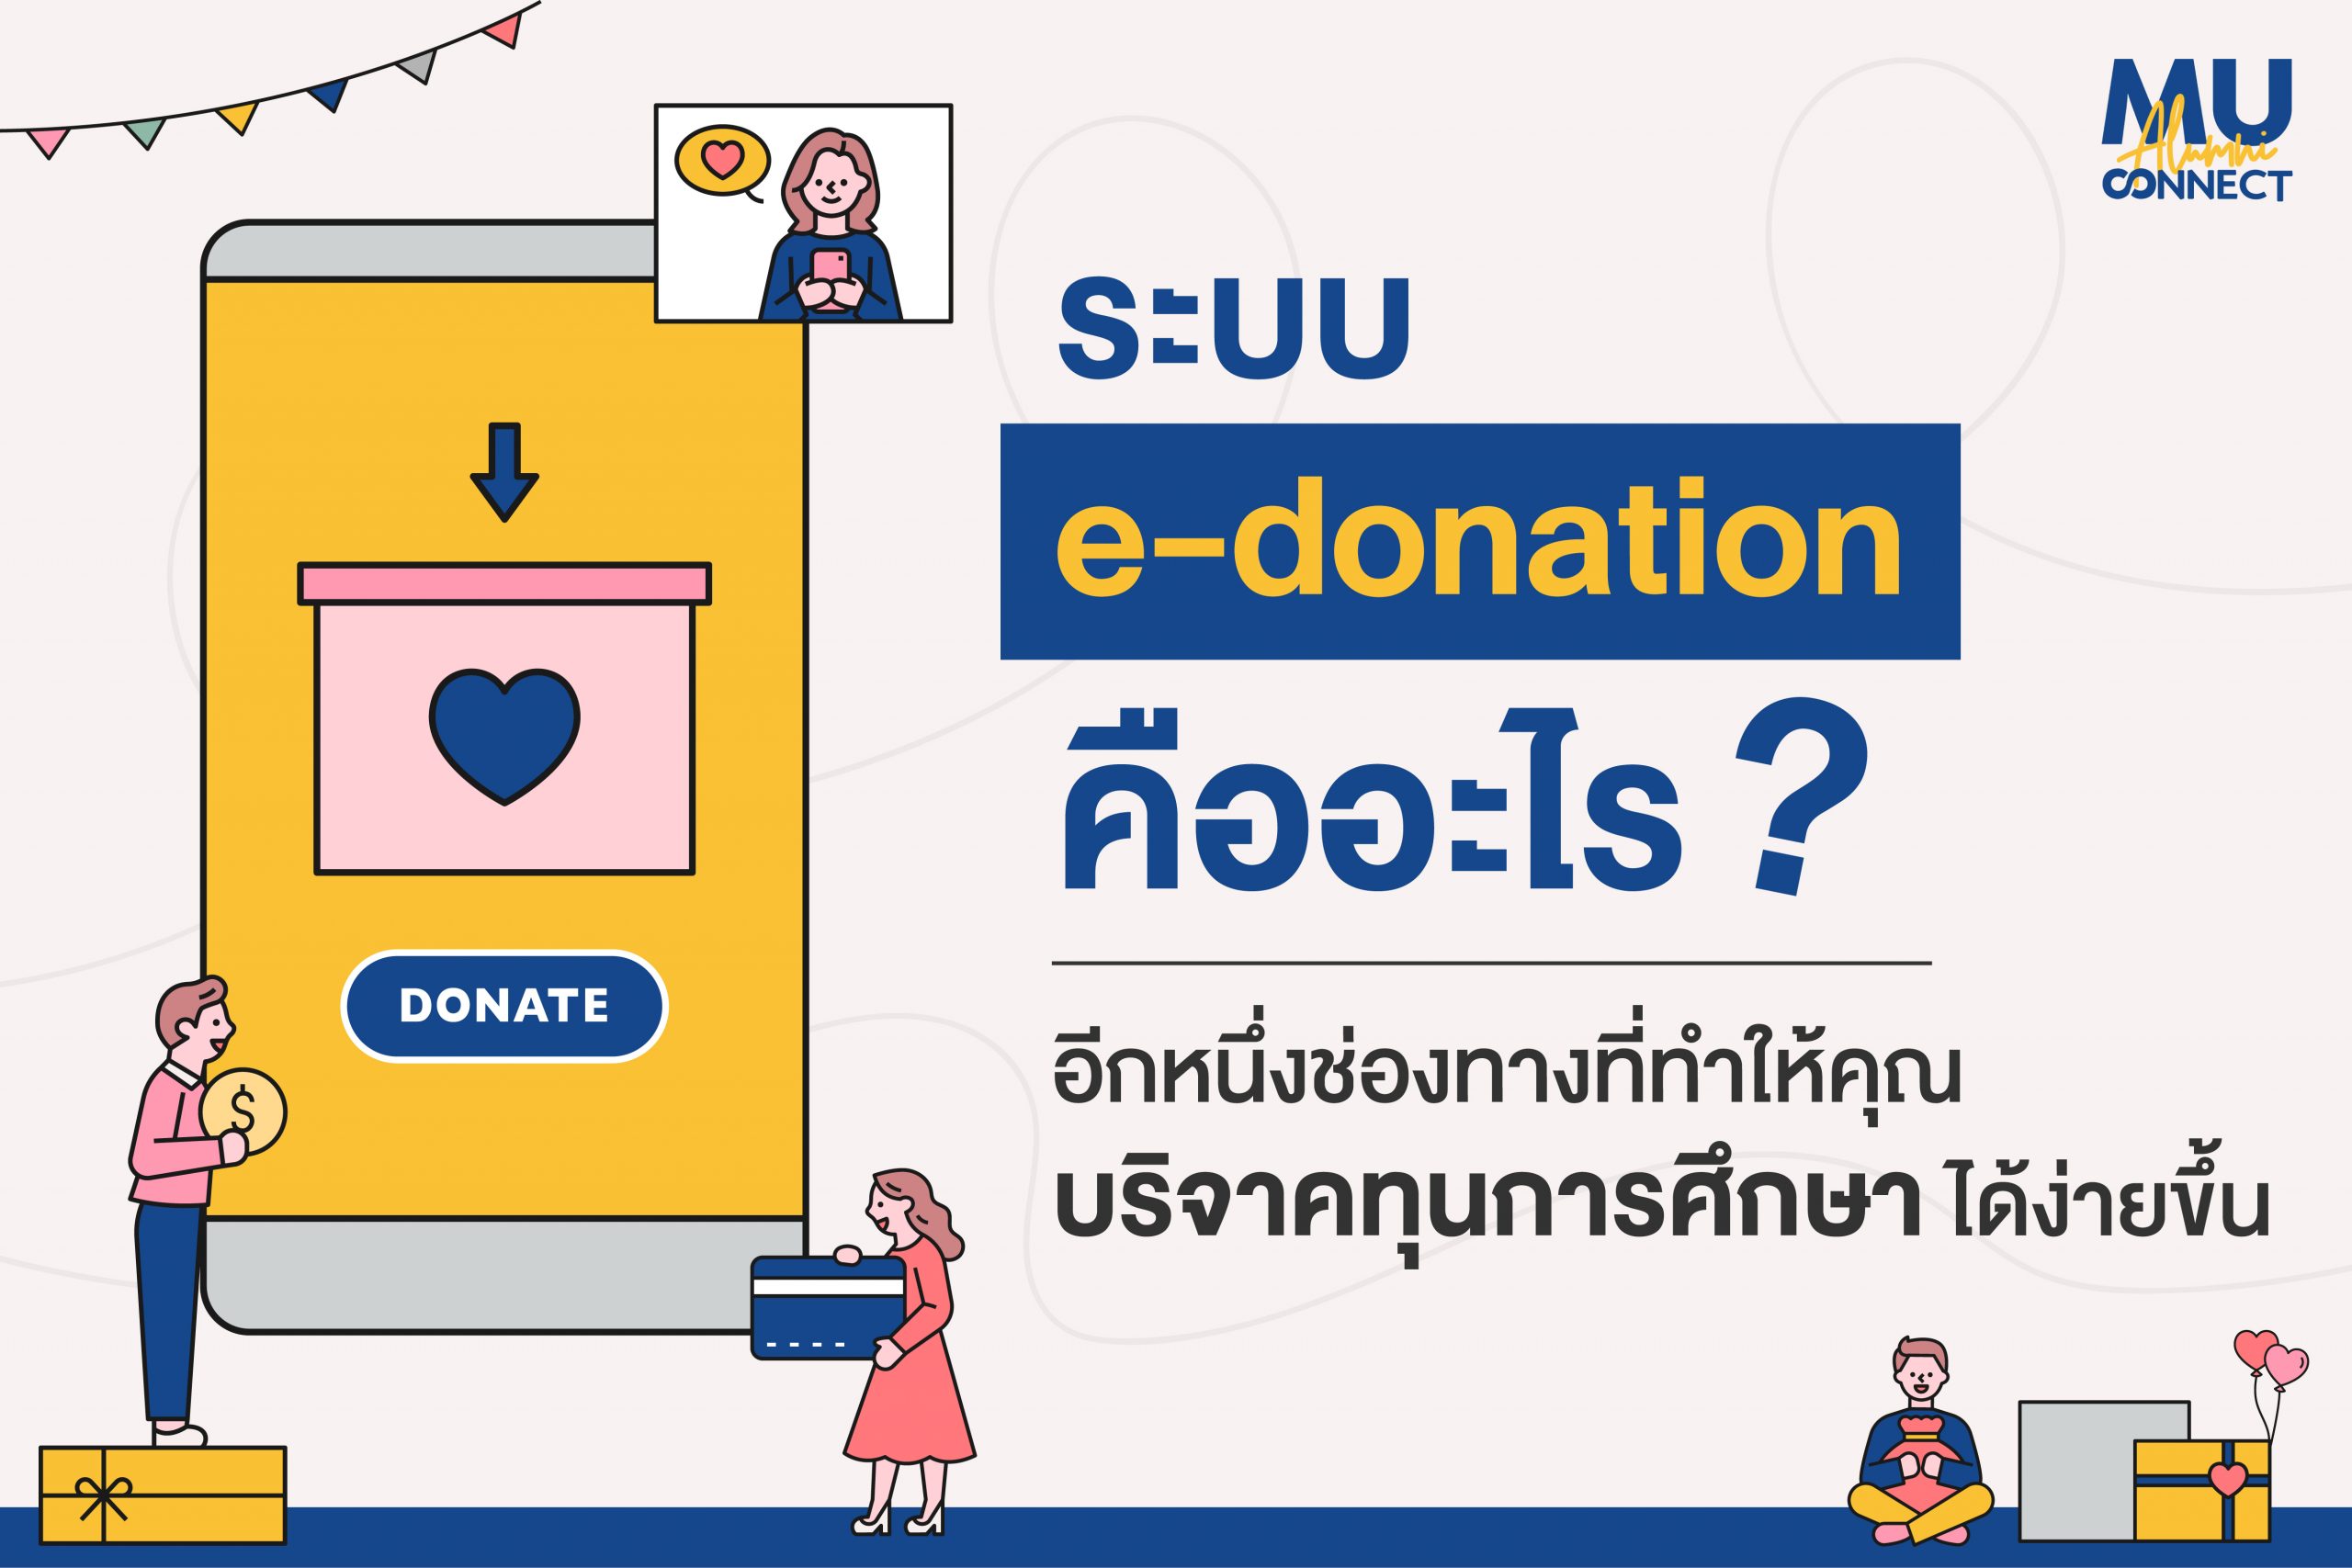 บริจาค e-donation คือ